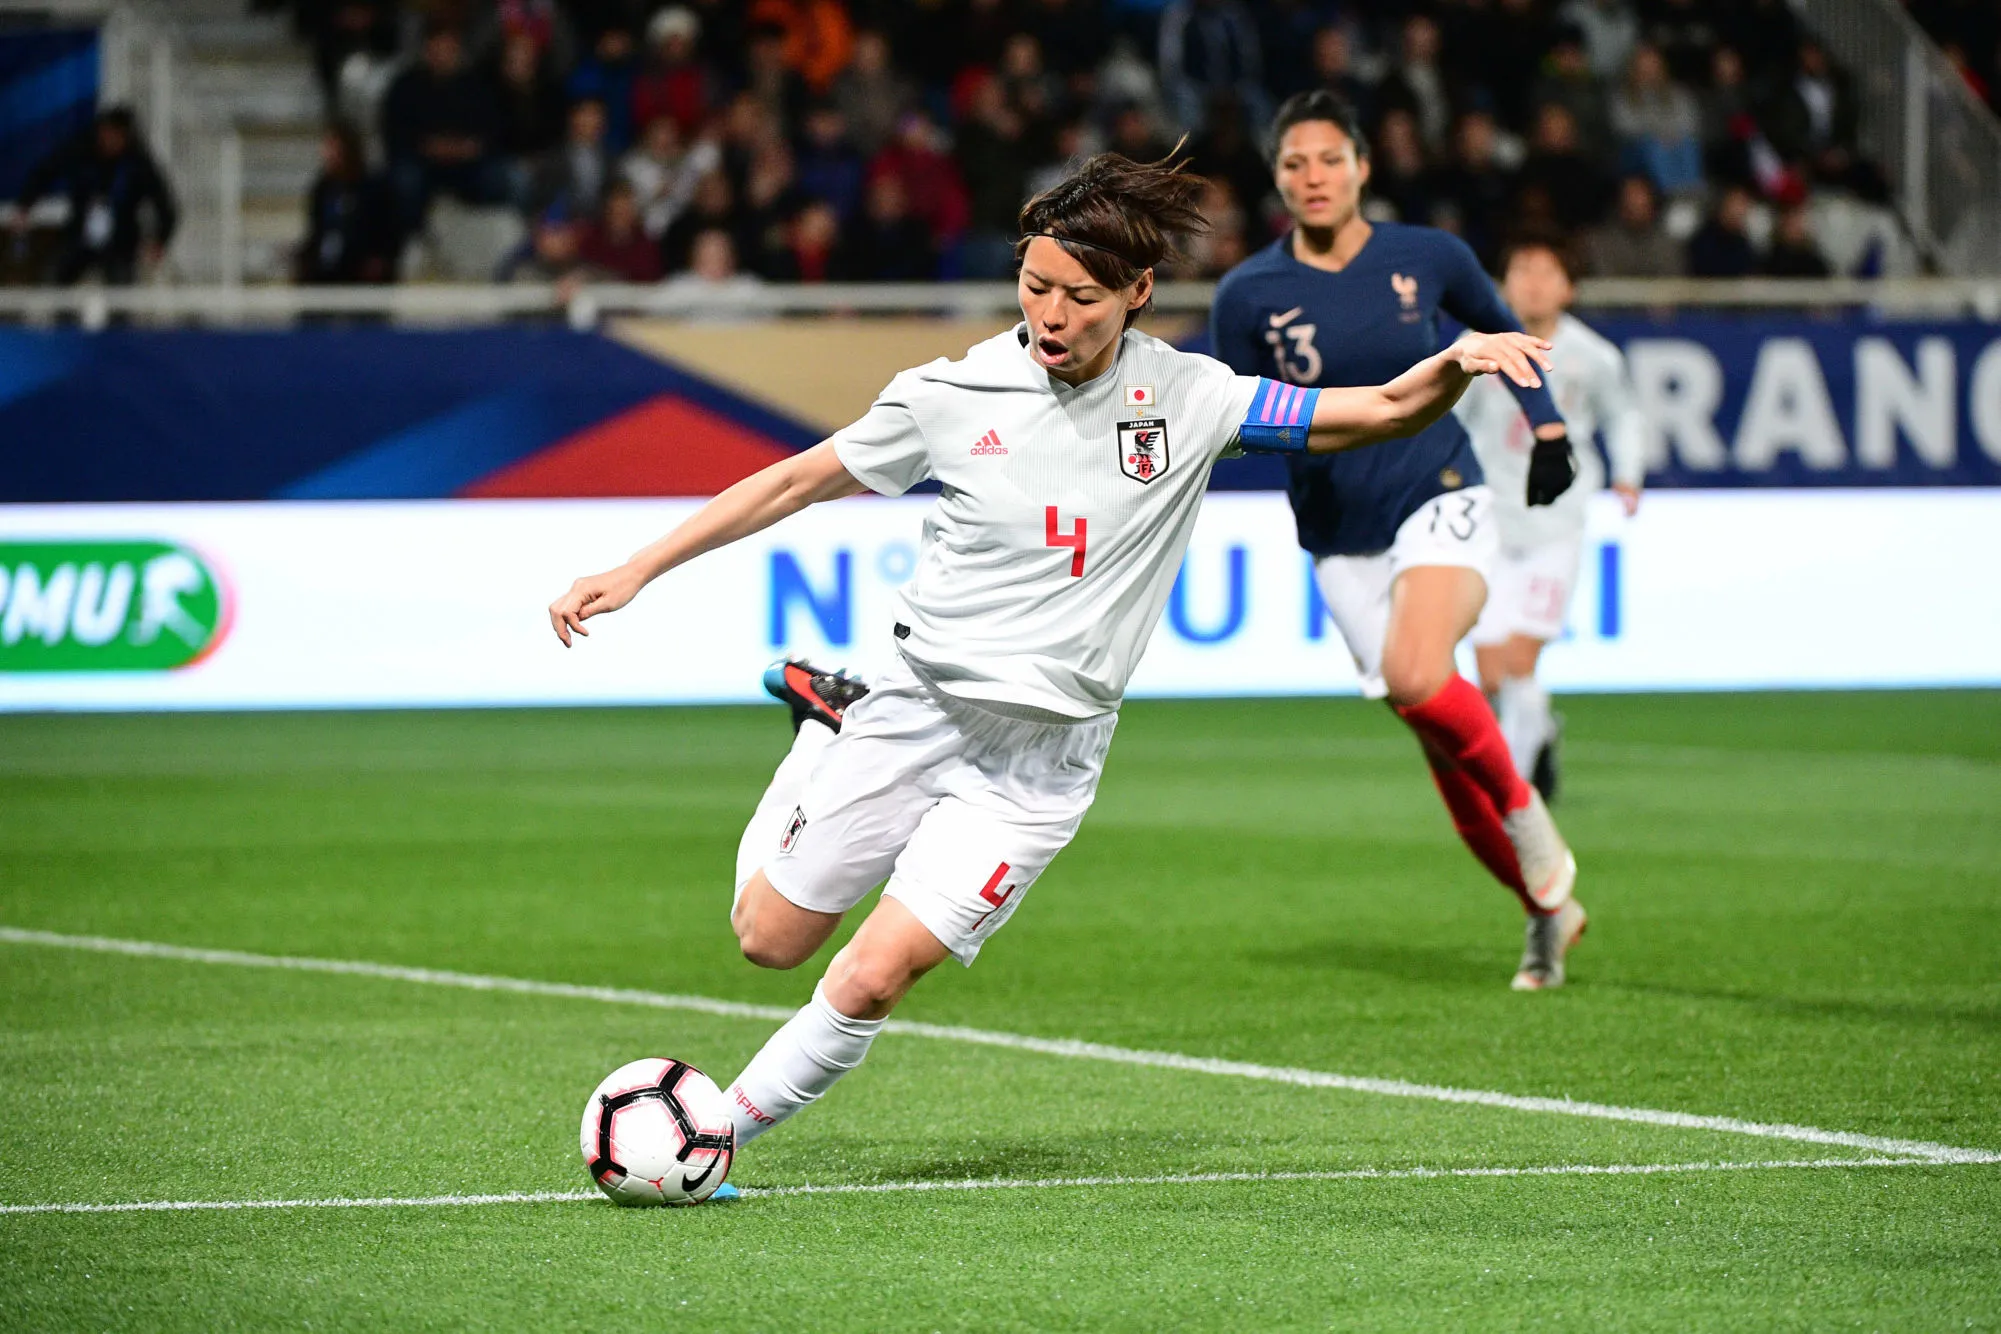 Pronostic Japon Écosse : Analyse, prono et cotes du match de la Coupe du monde féminine 2019